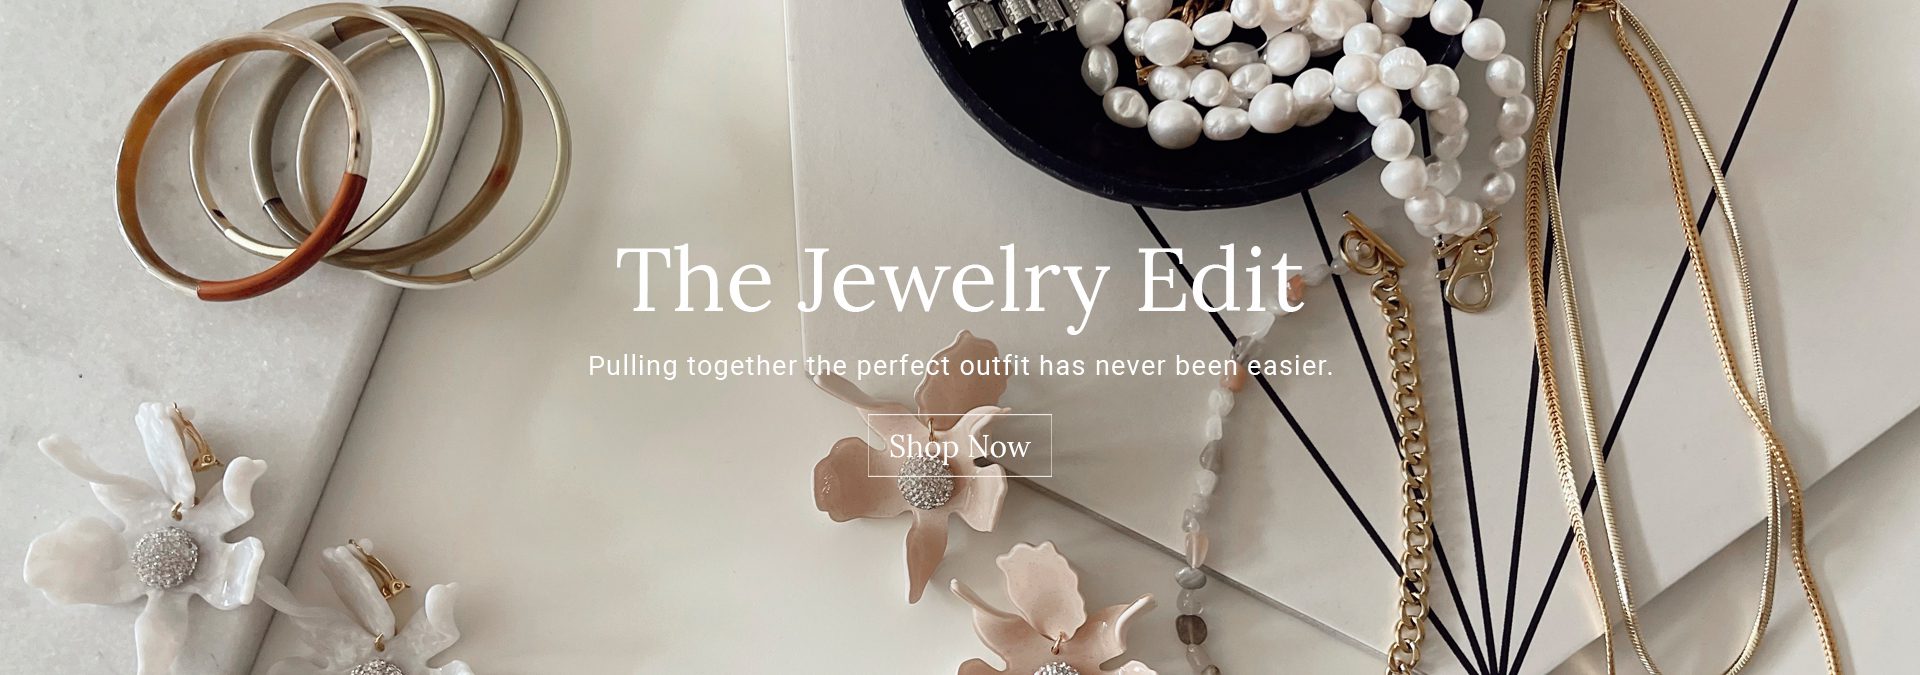 the jewelry edit - e.Allen Boutique